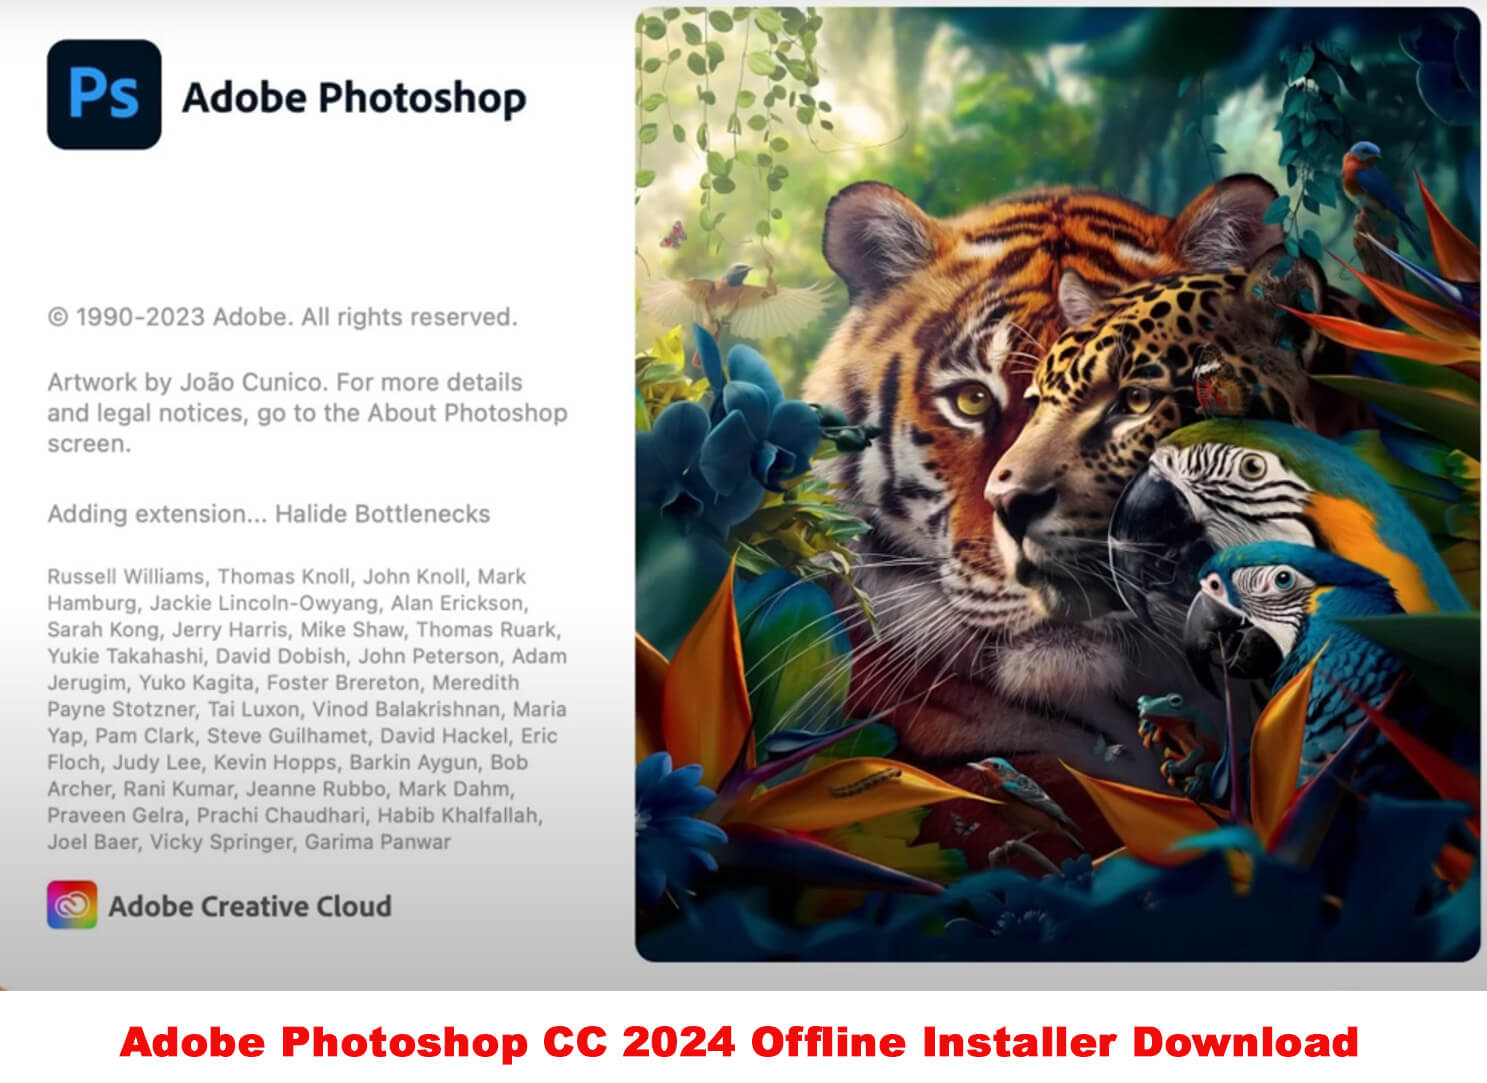 Download Adobe Photoshop CC 2024 64-bit offline installer